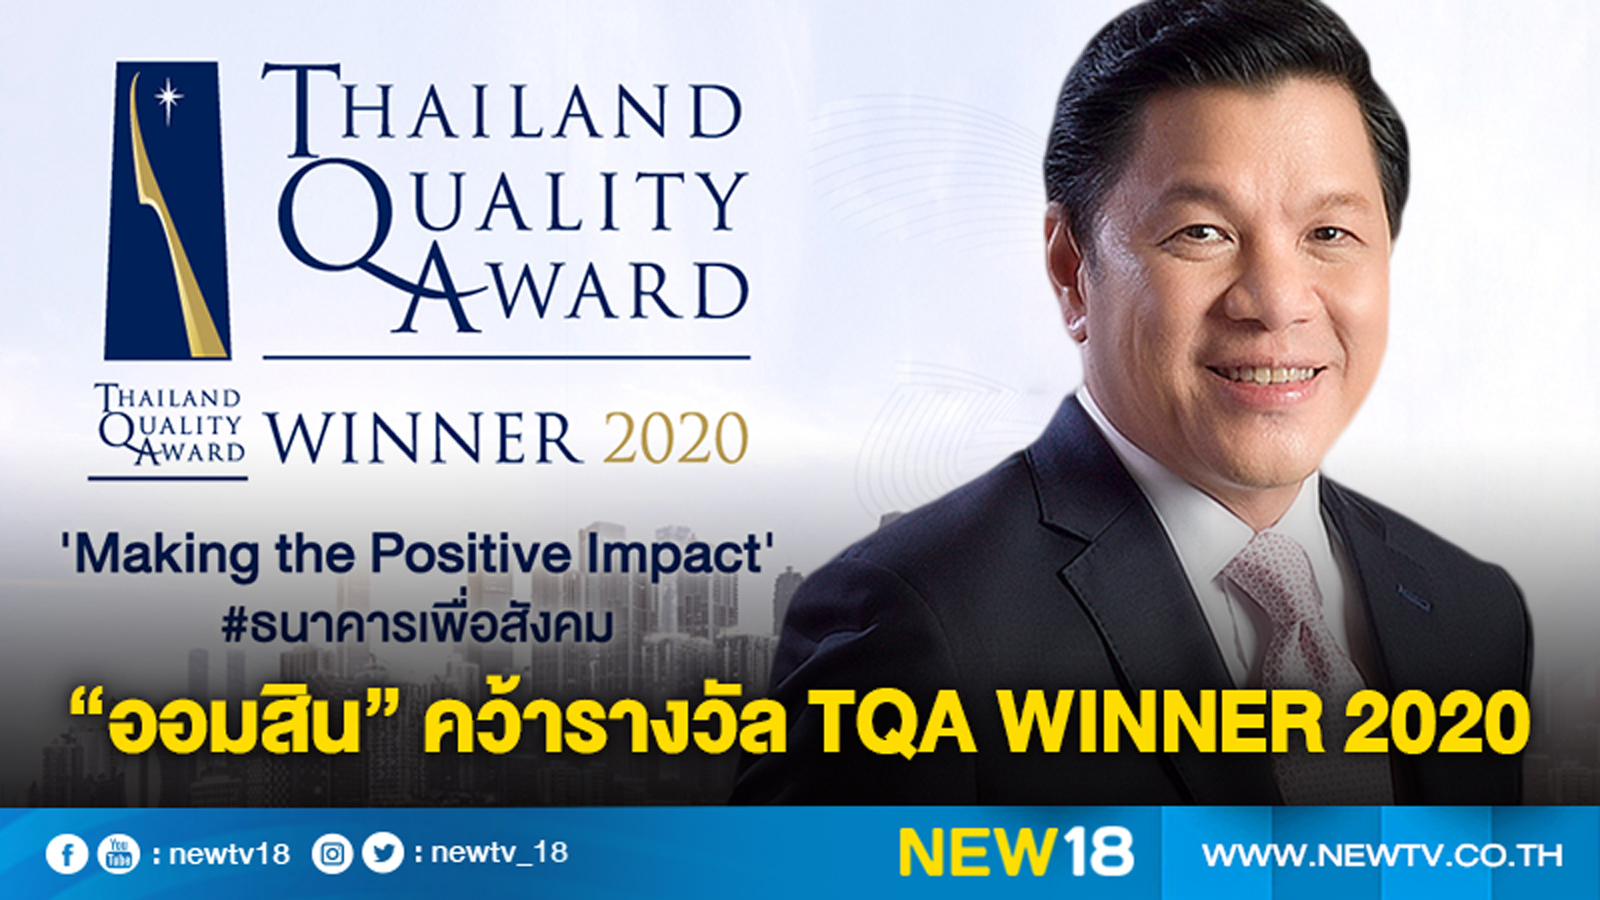 ออมสิน ประสบความสำเร็จคว้ารางวัลสุดยอดองค์กรคุณภาพมาตรฐานโลก  “Thailand Quality Award : TQA Winner 2020”